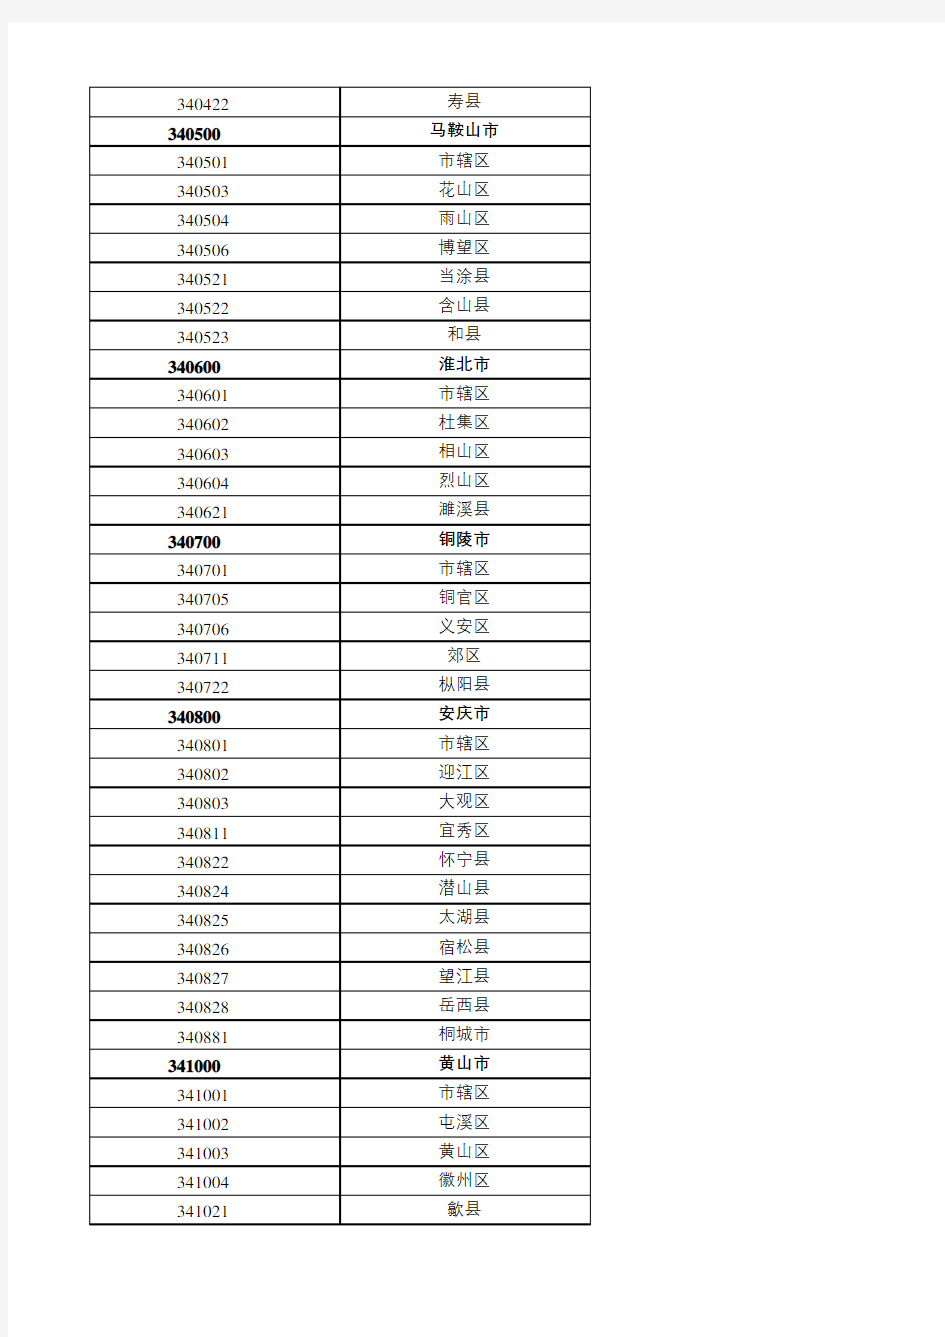 安徽省行政区划代码(2020)